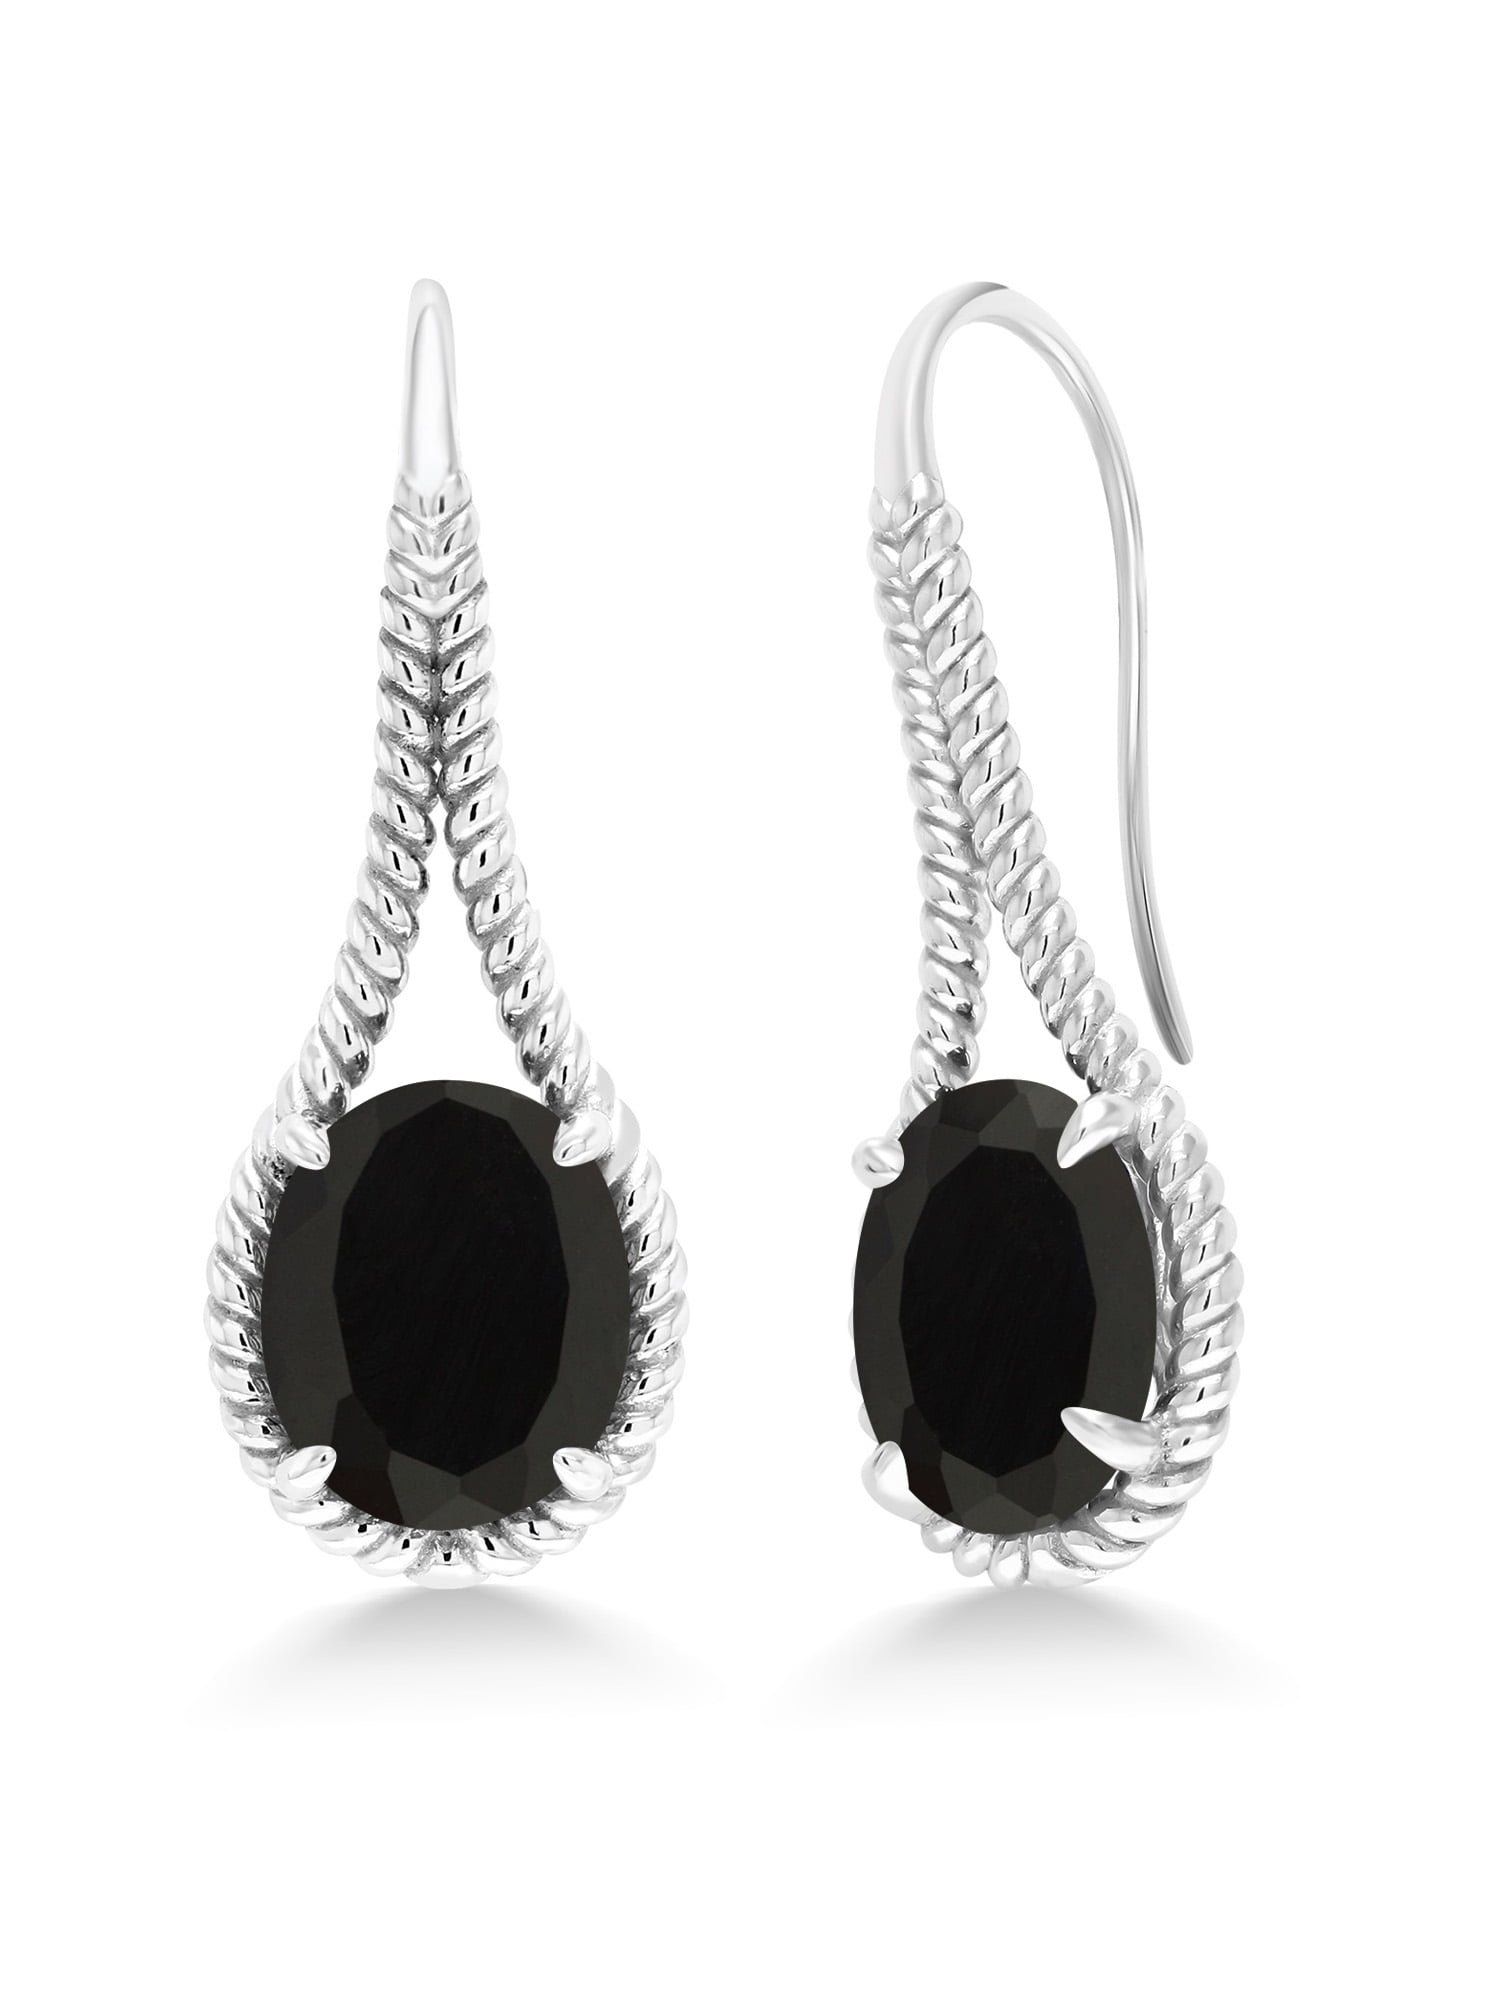 Onyx Earrings in 925 Sterling Silver Oval Black Gemstone Earrings in Silver 